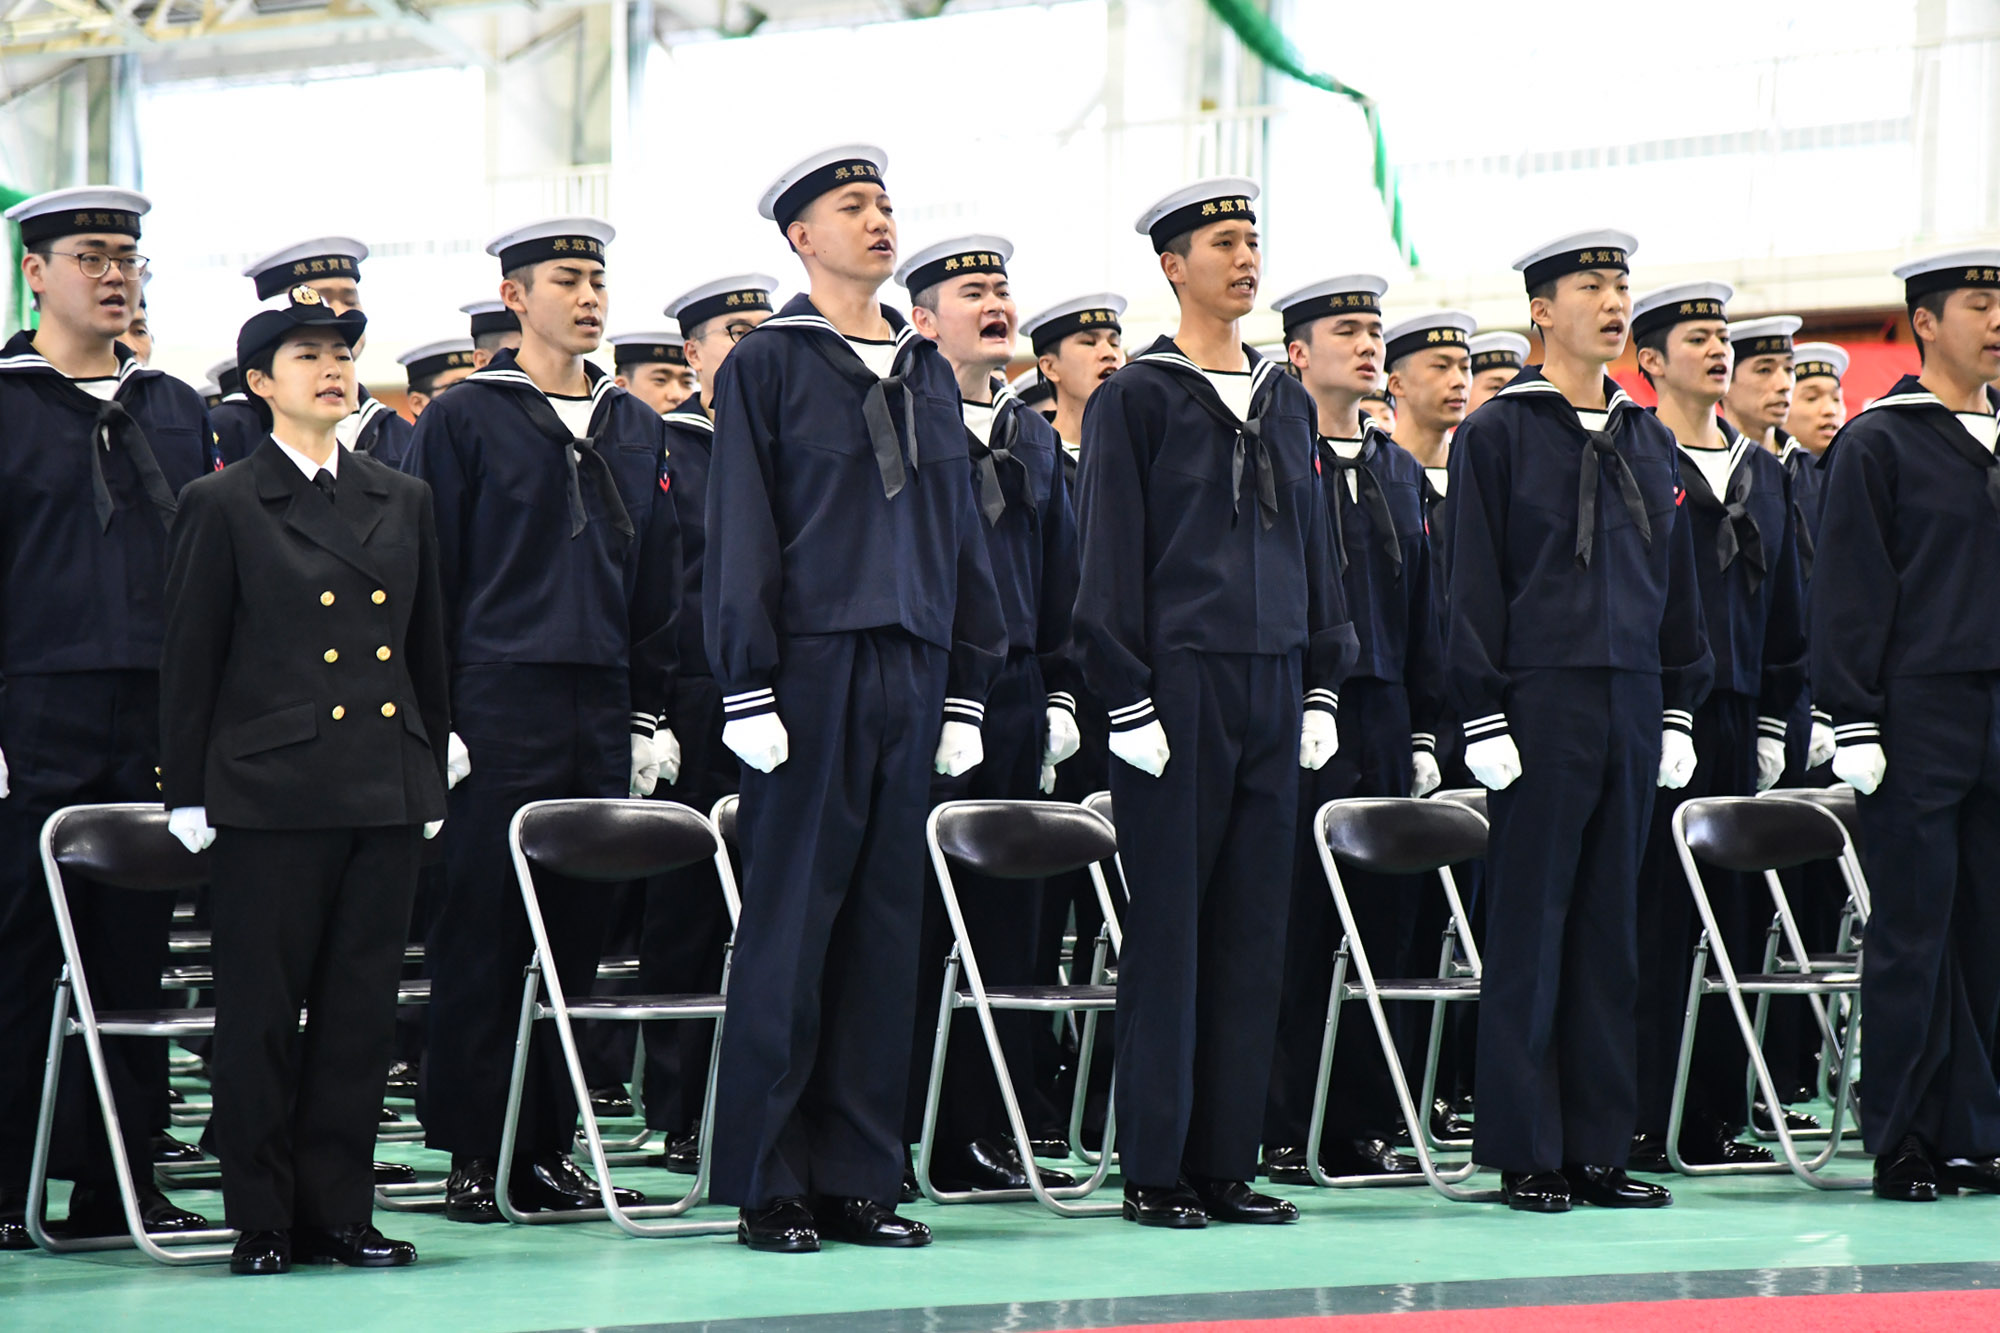 第19期 一般海曹候補生課程及び第27期 自衛官候補生課程 入隊式